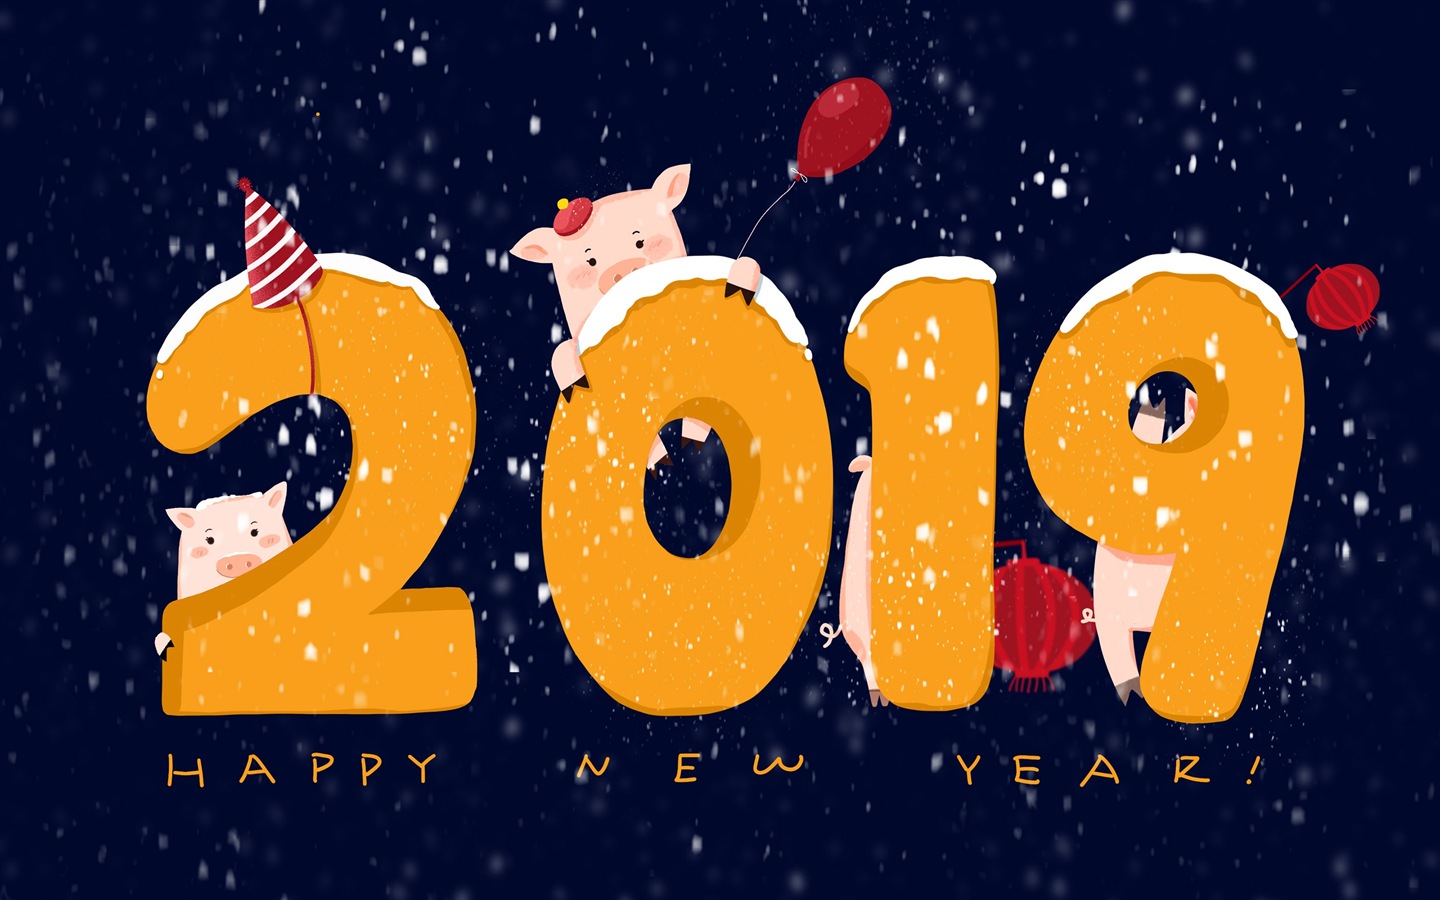 Feliz año nuevo 2019 HD wallpapers #18 - 1440x900